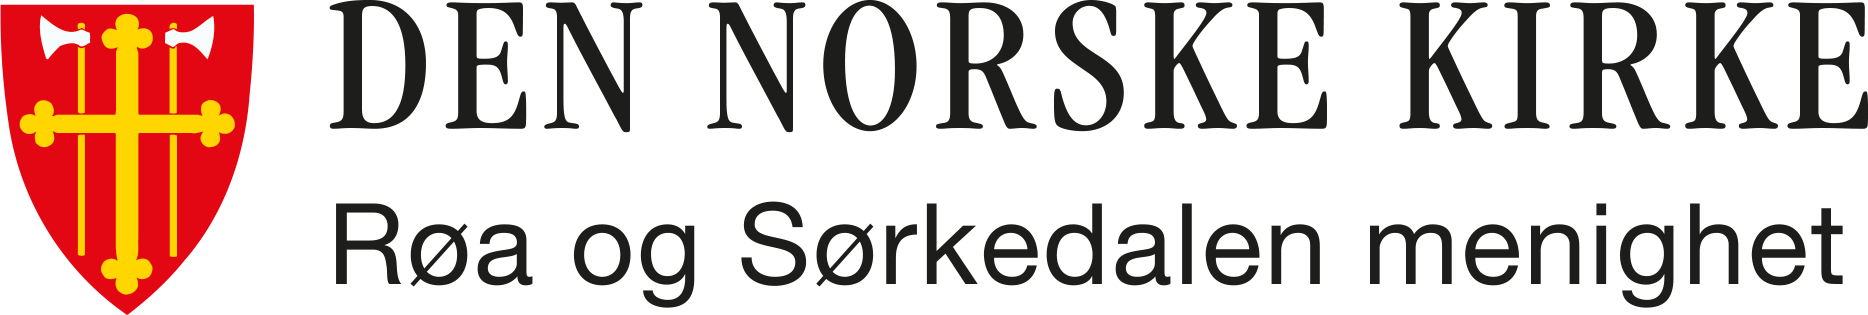 Røa og Sørkedalen menigheter logo